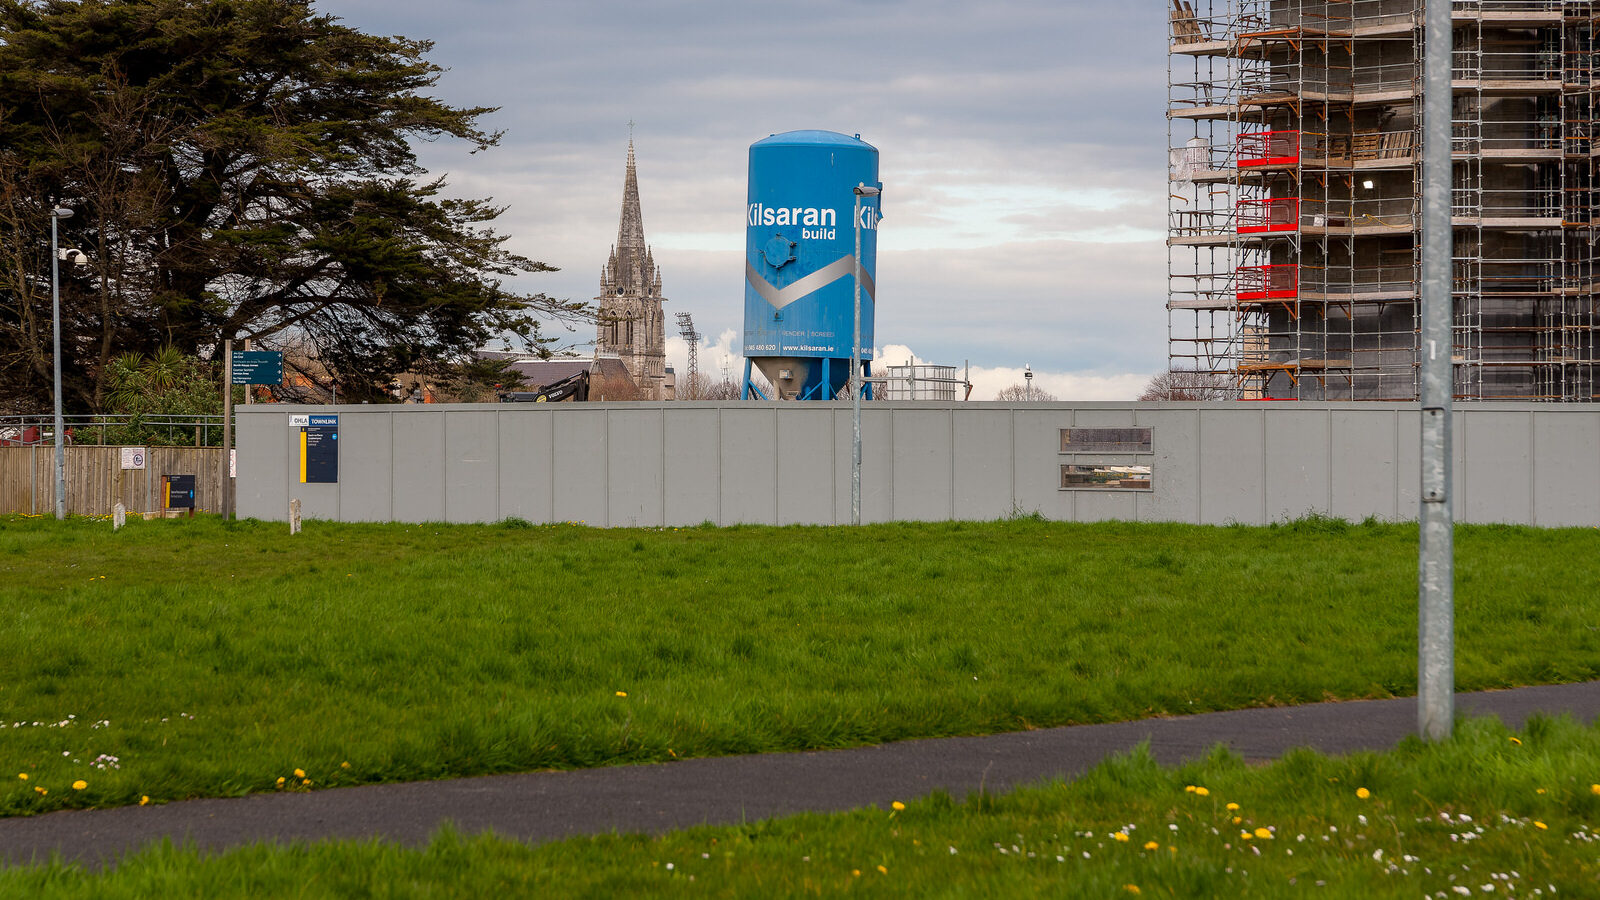 TU DUBLIN'S ACADEMIC HUB [A FLAGSHIP BUILDING UNDER CONSTRUCTION]-223826-1